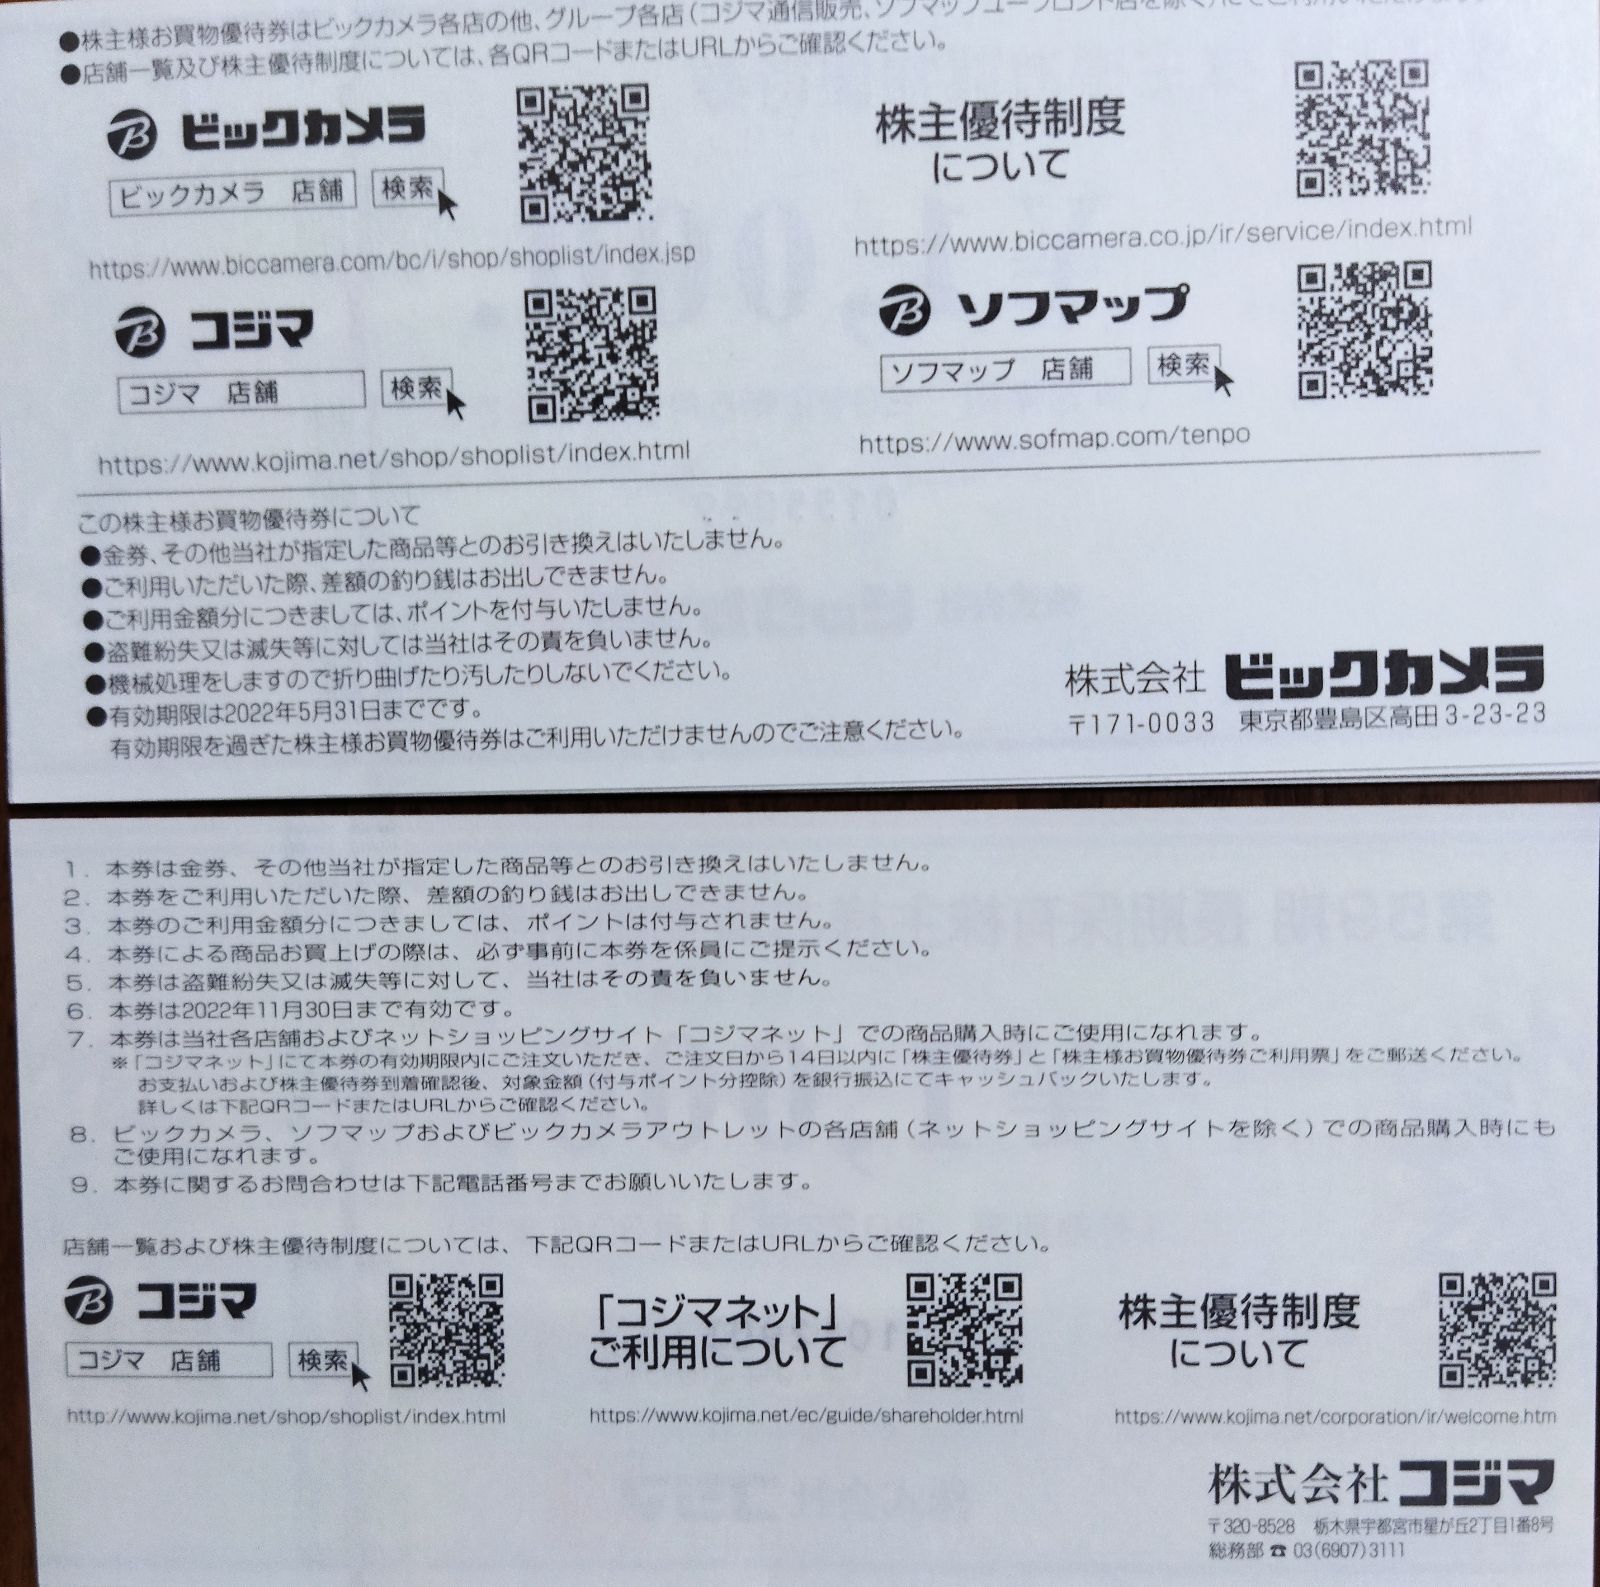 ビッグカメラ コジマ ソフマップ 株主優待券 1000円分 - ショッピング